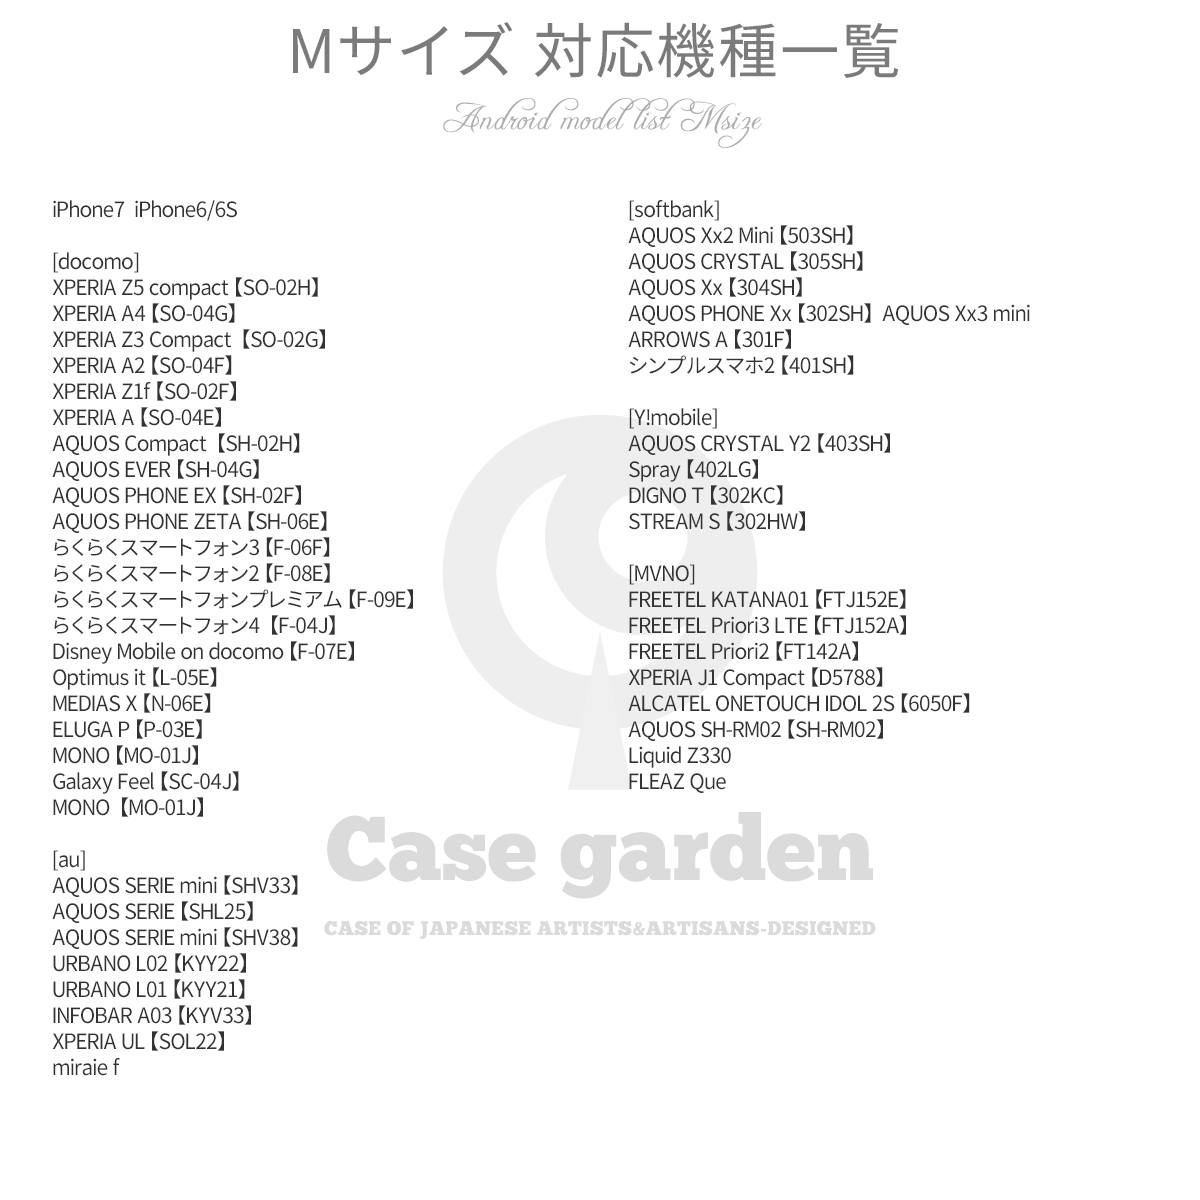 Android 手帳ケース 機種一覧 Case Garden ケースガーデン Iichi ハンドメイド クラフト作品 手仕事品の通販